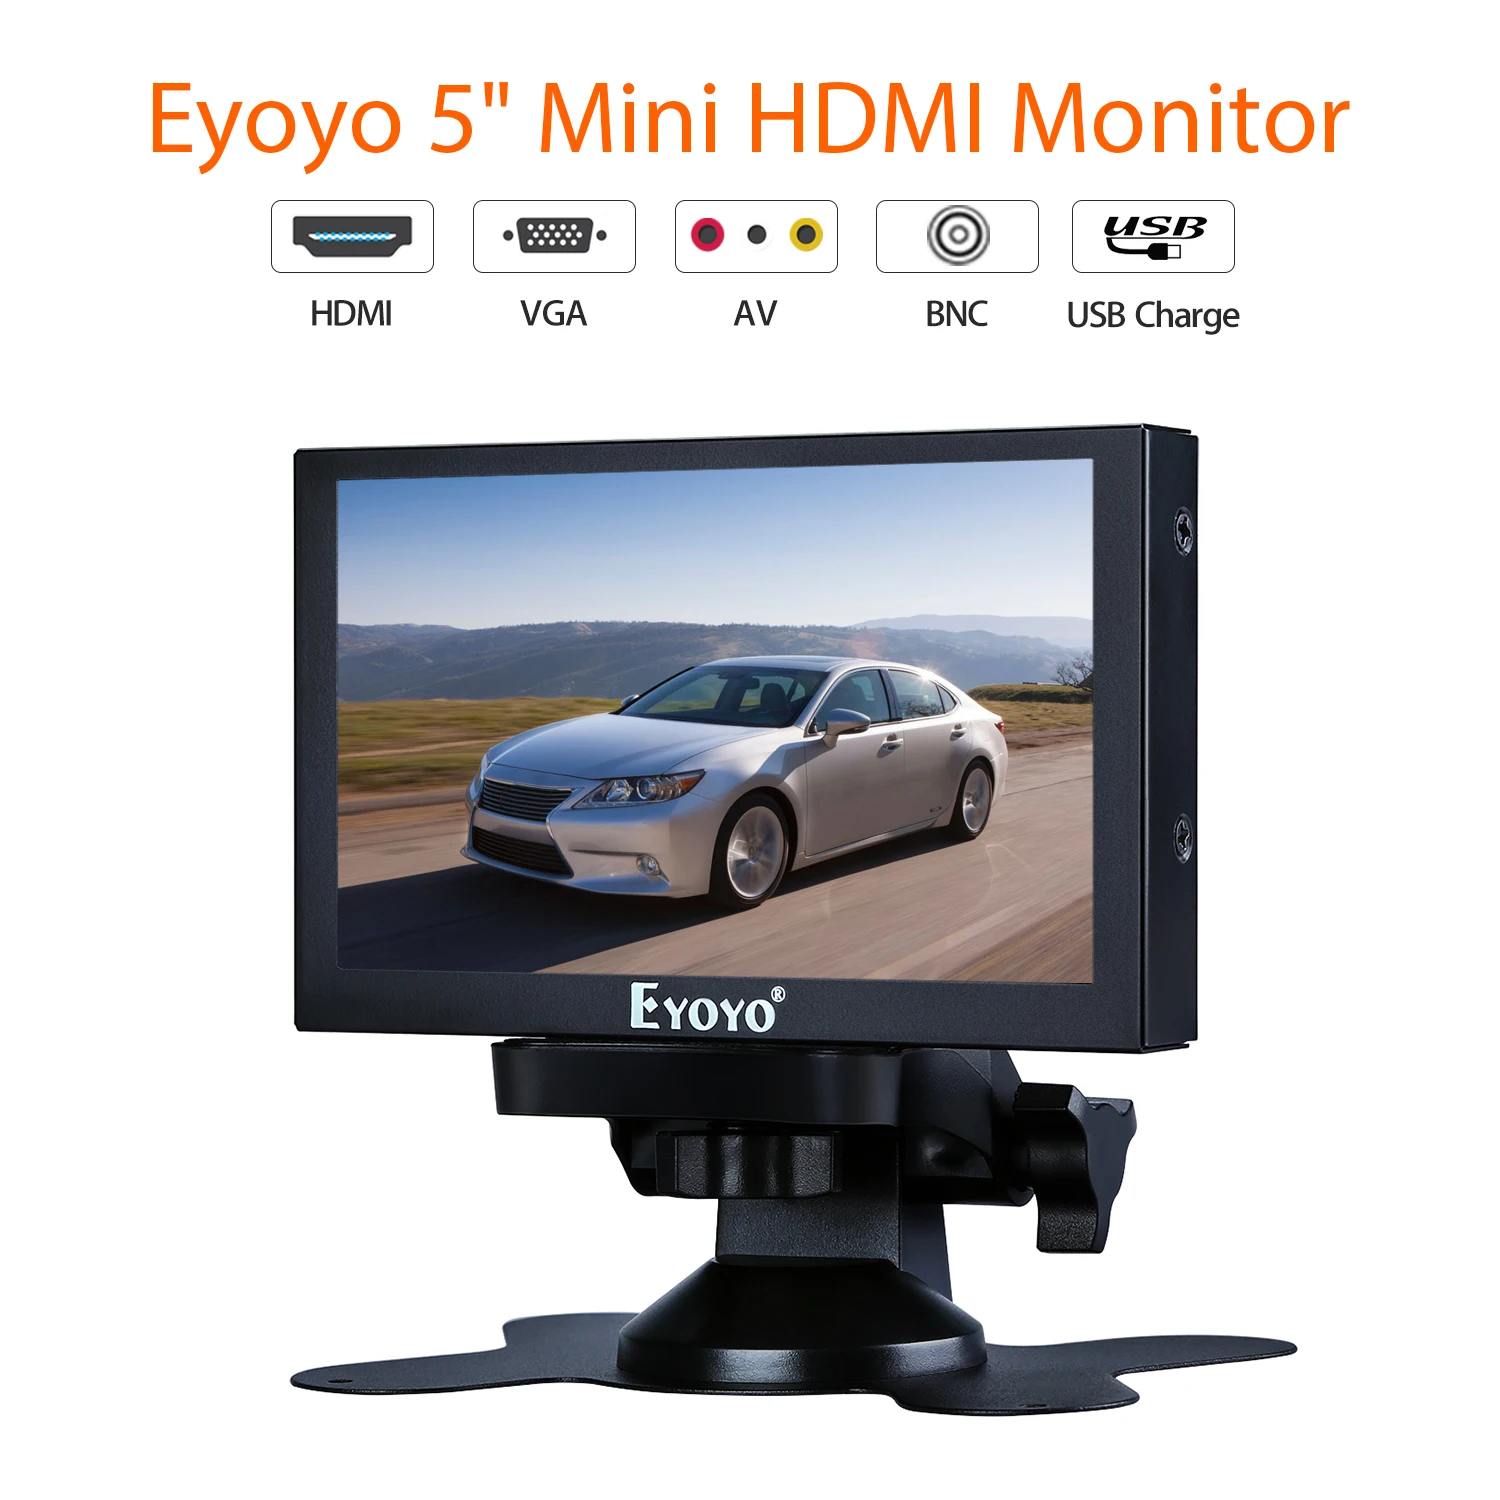 Eyoyo-Monitor pequeño con Hdmi para coche, pantalla portátil de 5 pulgadas, vga, CCTV, LCD 800x480, IPS, BNC, AV/VGA